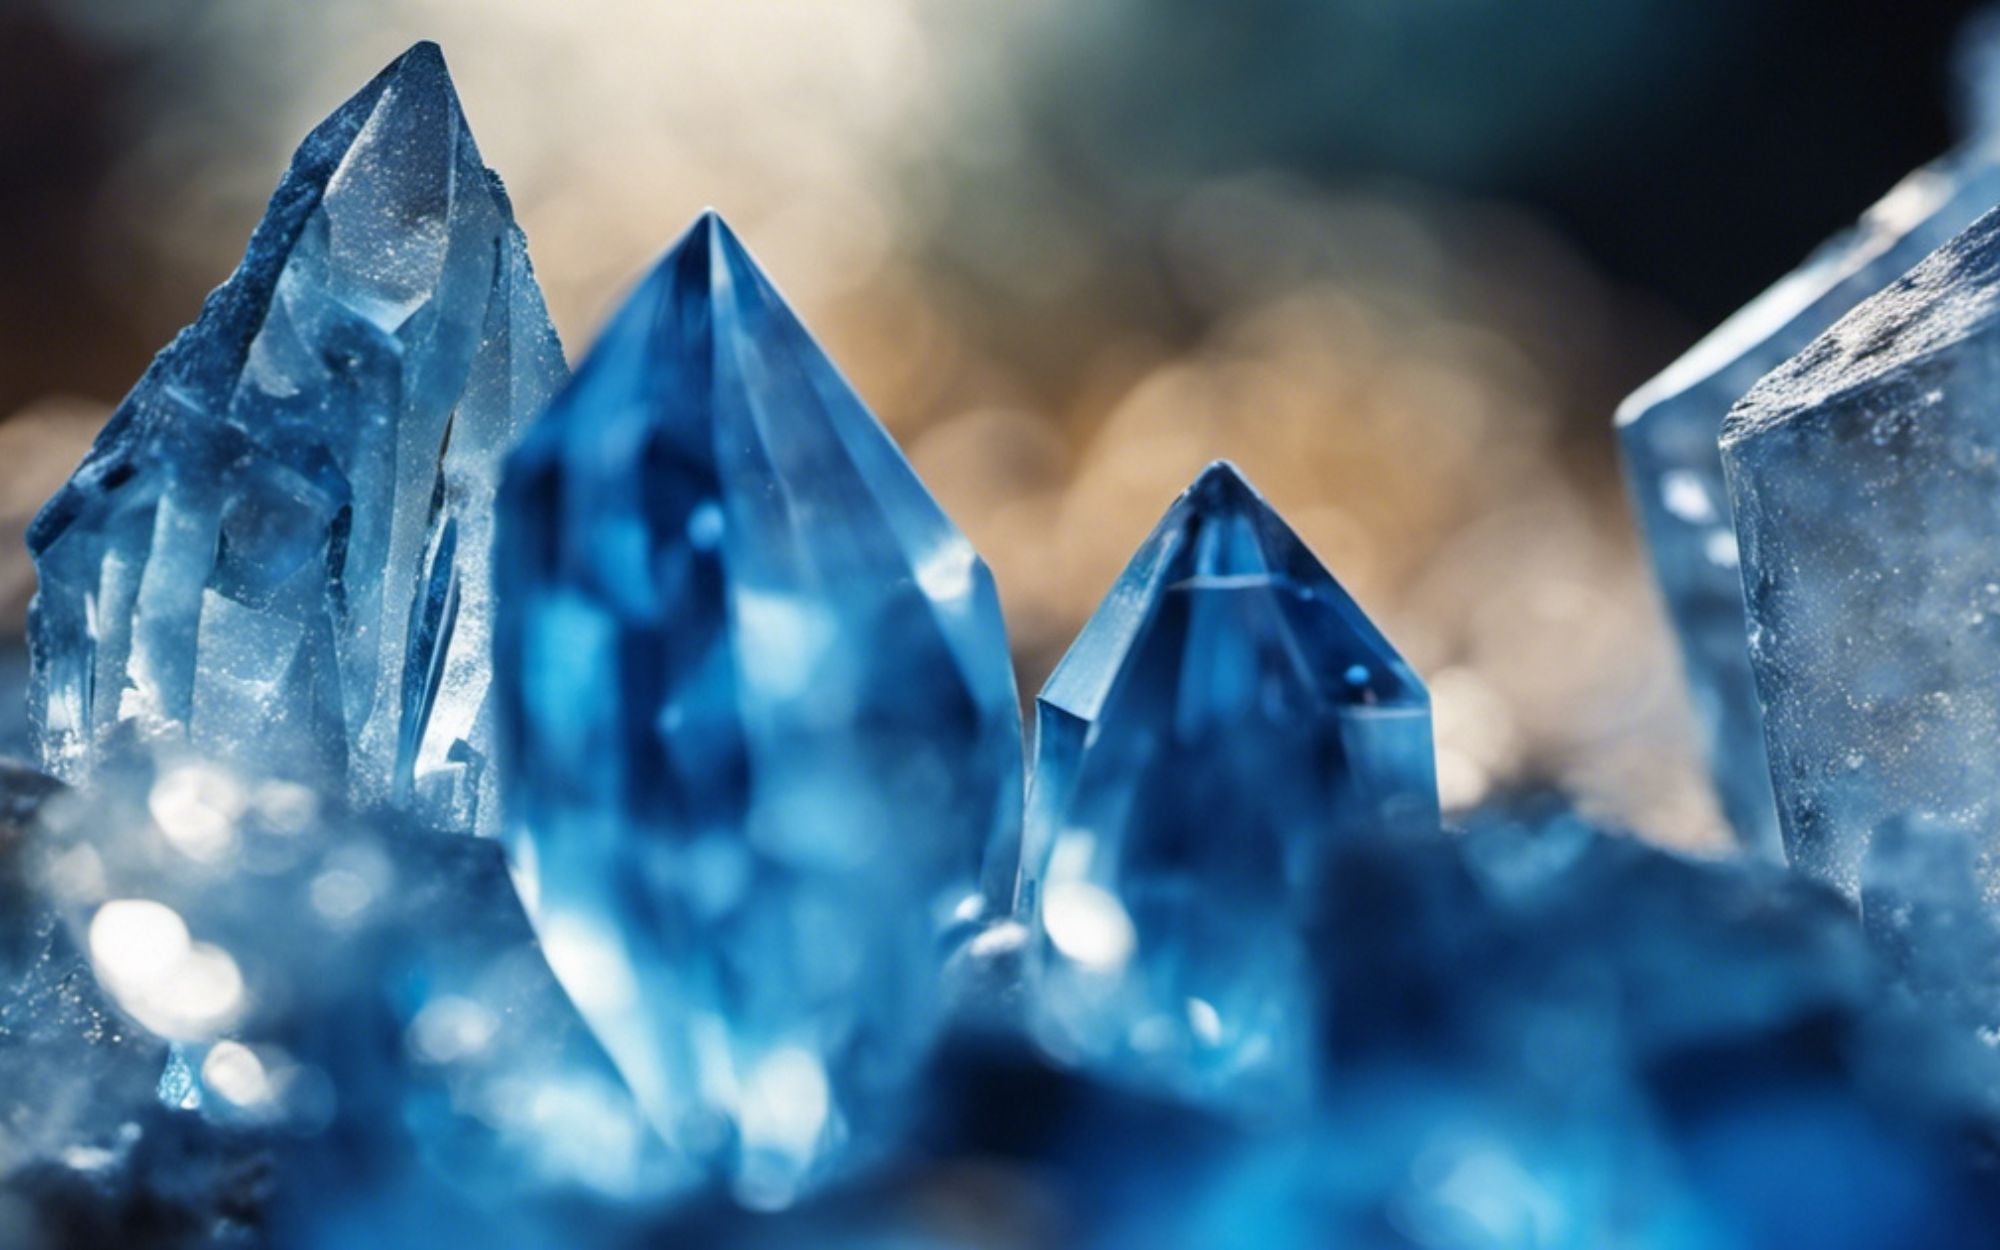 colores de cristal y sus significados - cristales azules